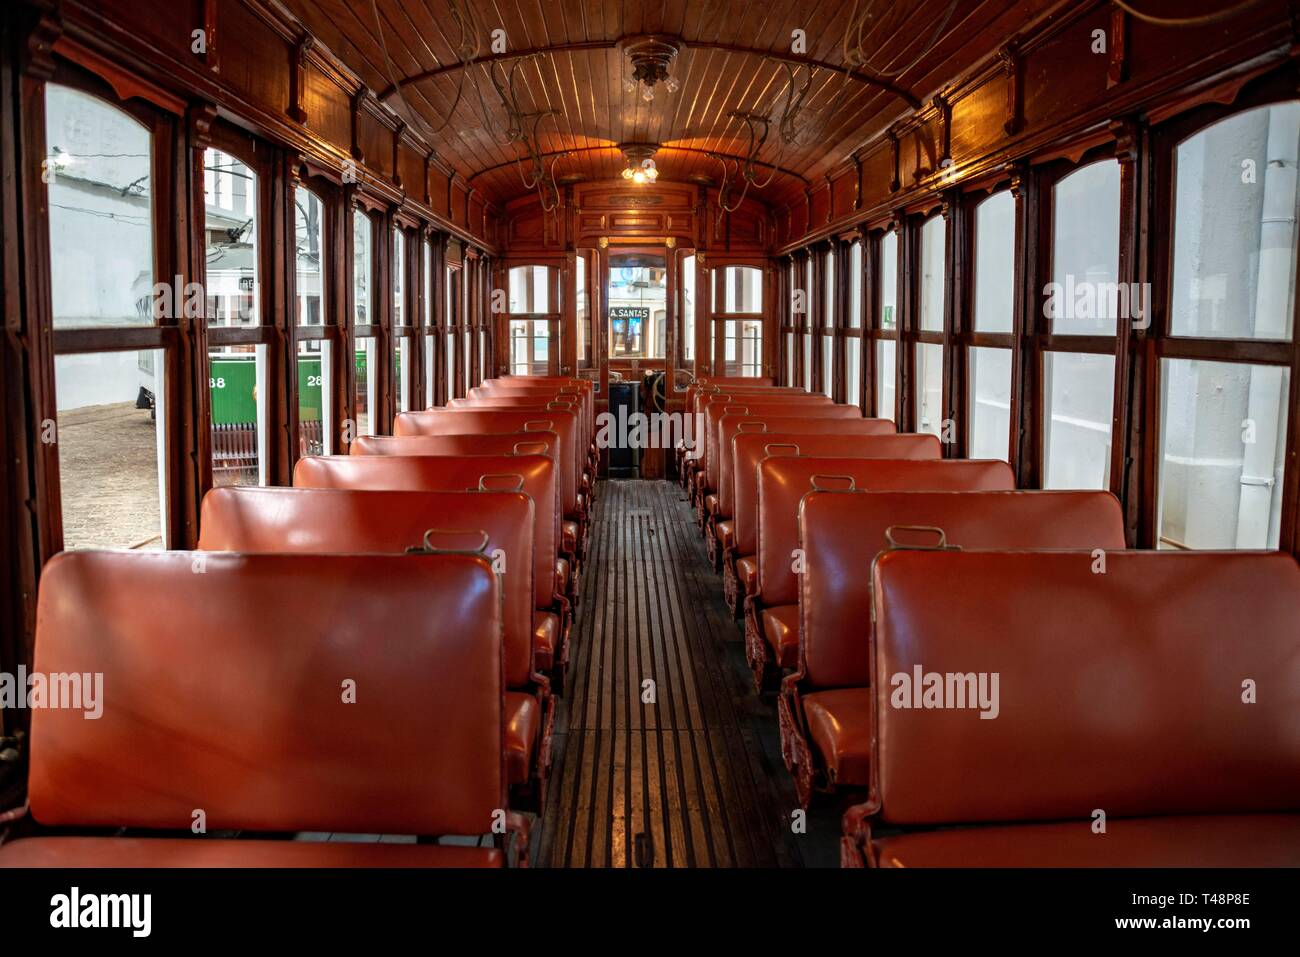 Interior view of a historic tram, tram museum, Museu do Carro Electrico da Cidade do Porto, Porto, Portugal Stock Photo